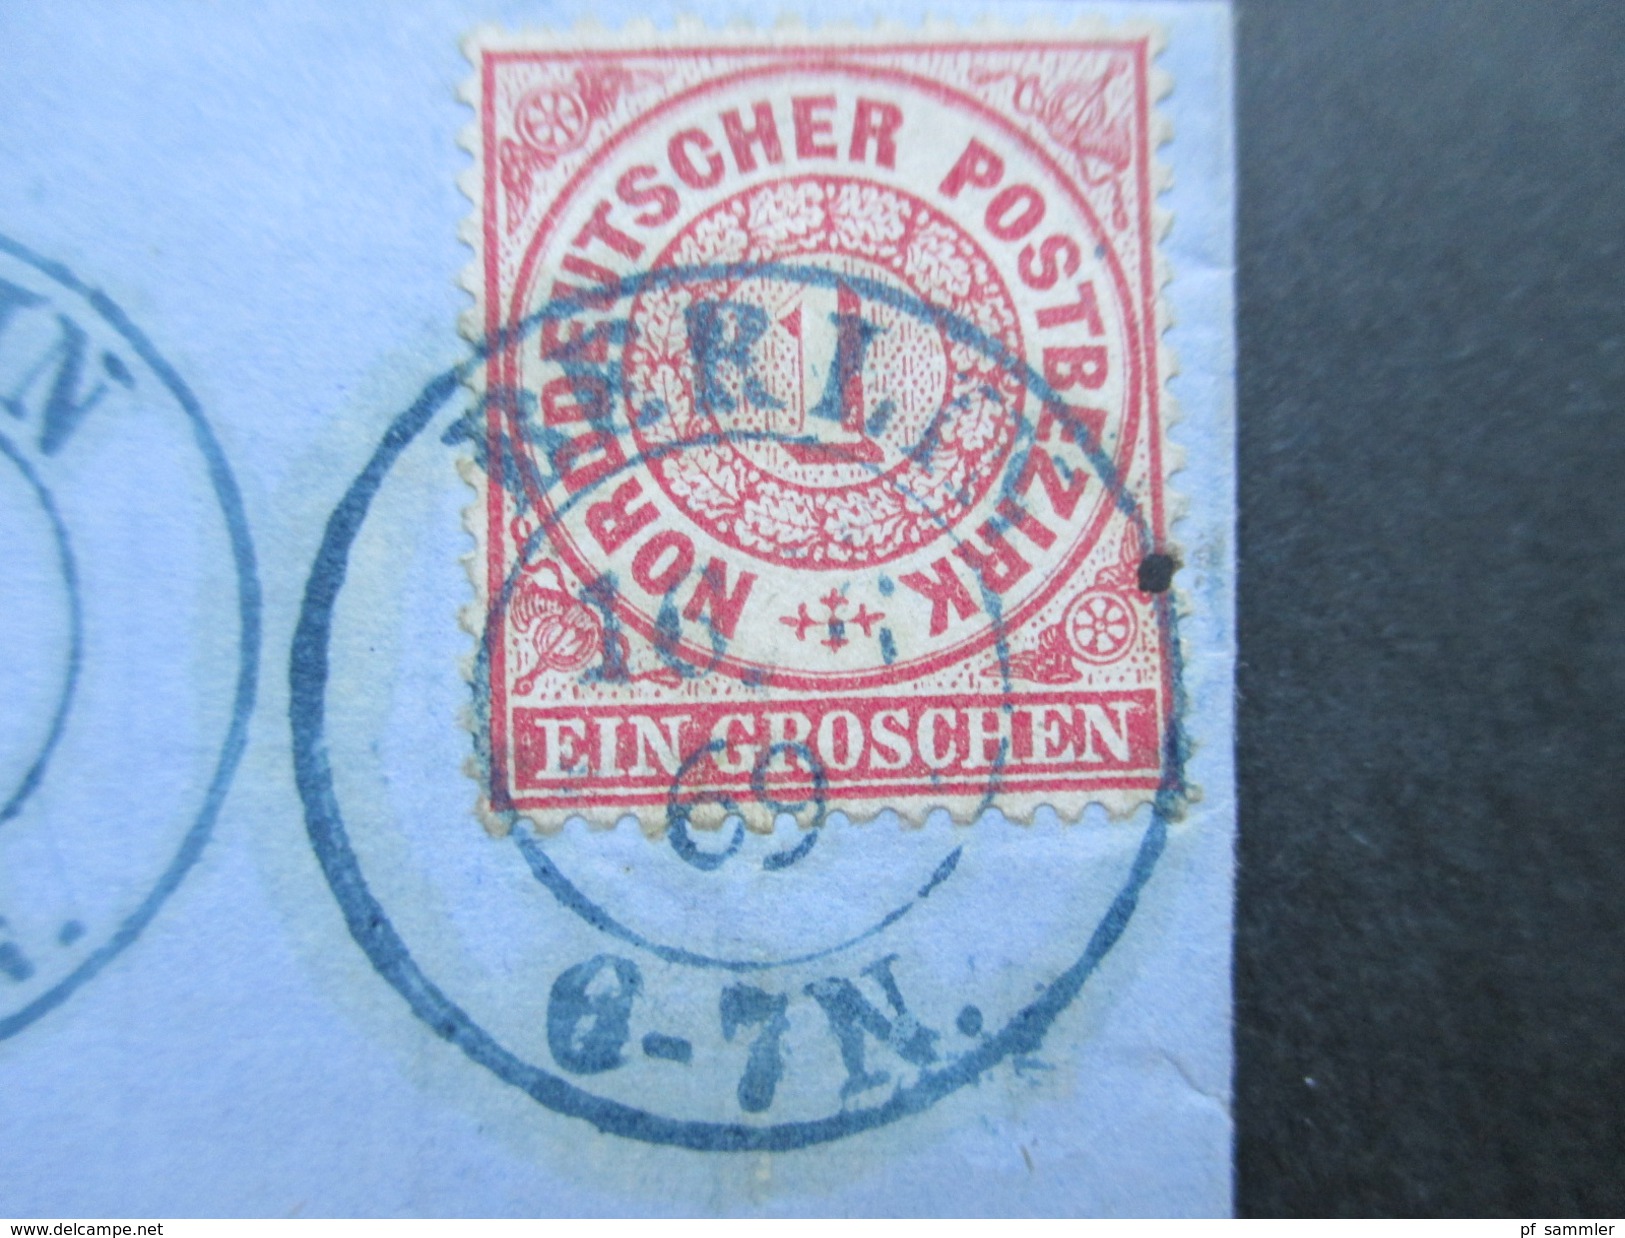 Altdeutschland Norddeutscher Bund 1868/69 Nr. 4 und Nr. 16. 3 Belege! R2 Warendorf und K2 Coeln + Berlin (blau??)